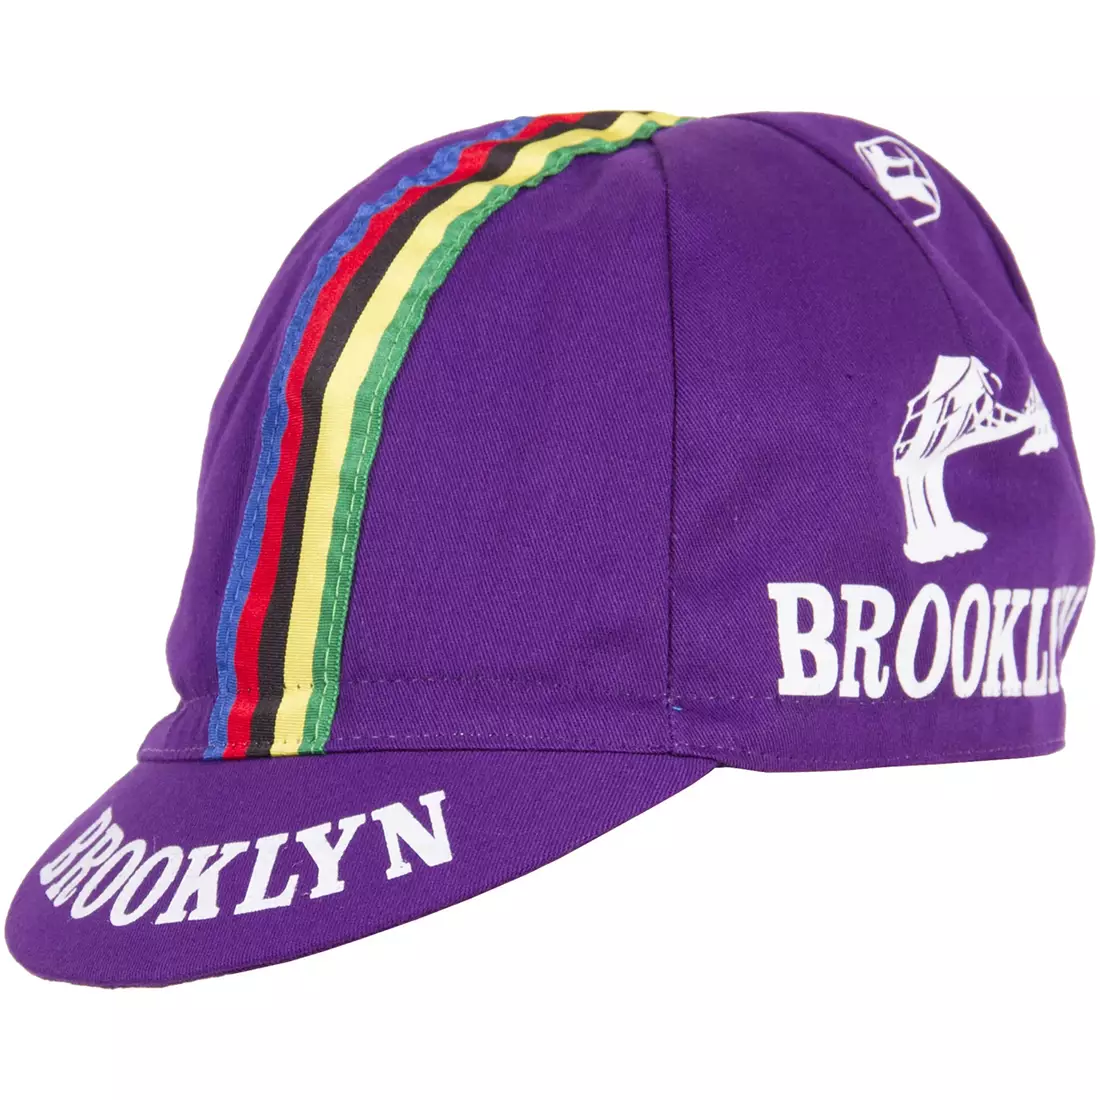 Cyklistická čiapka GIORDANA SS18 - Brooklyn - fialová s pásikovou páskou GI-S6-COCA-BROK-PURP jedna veľ.